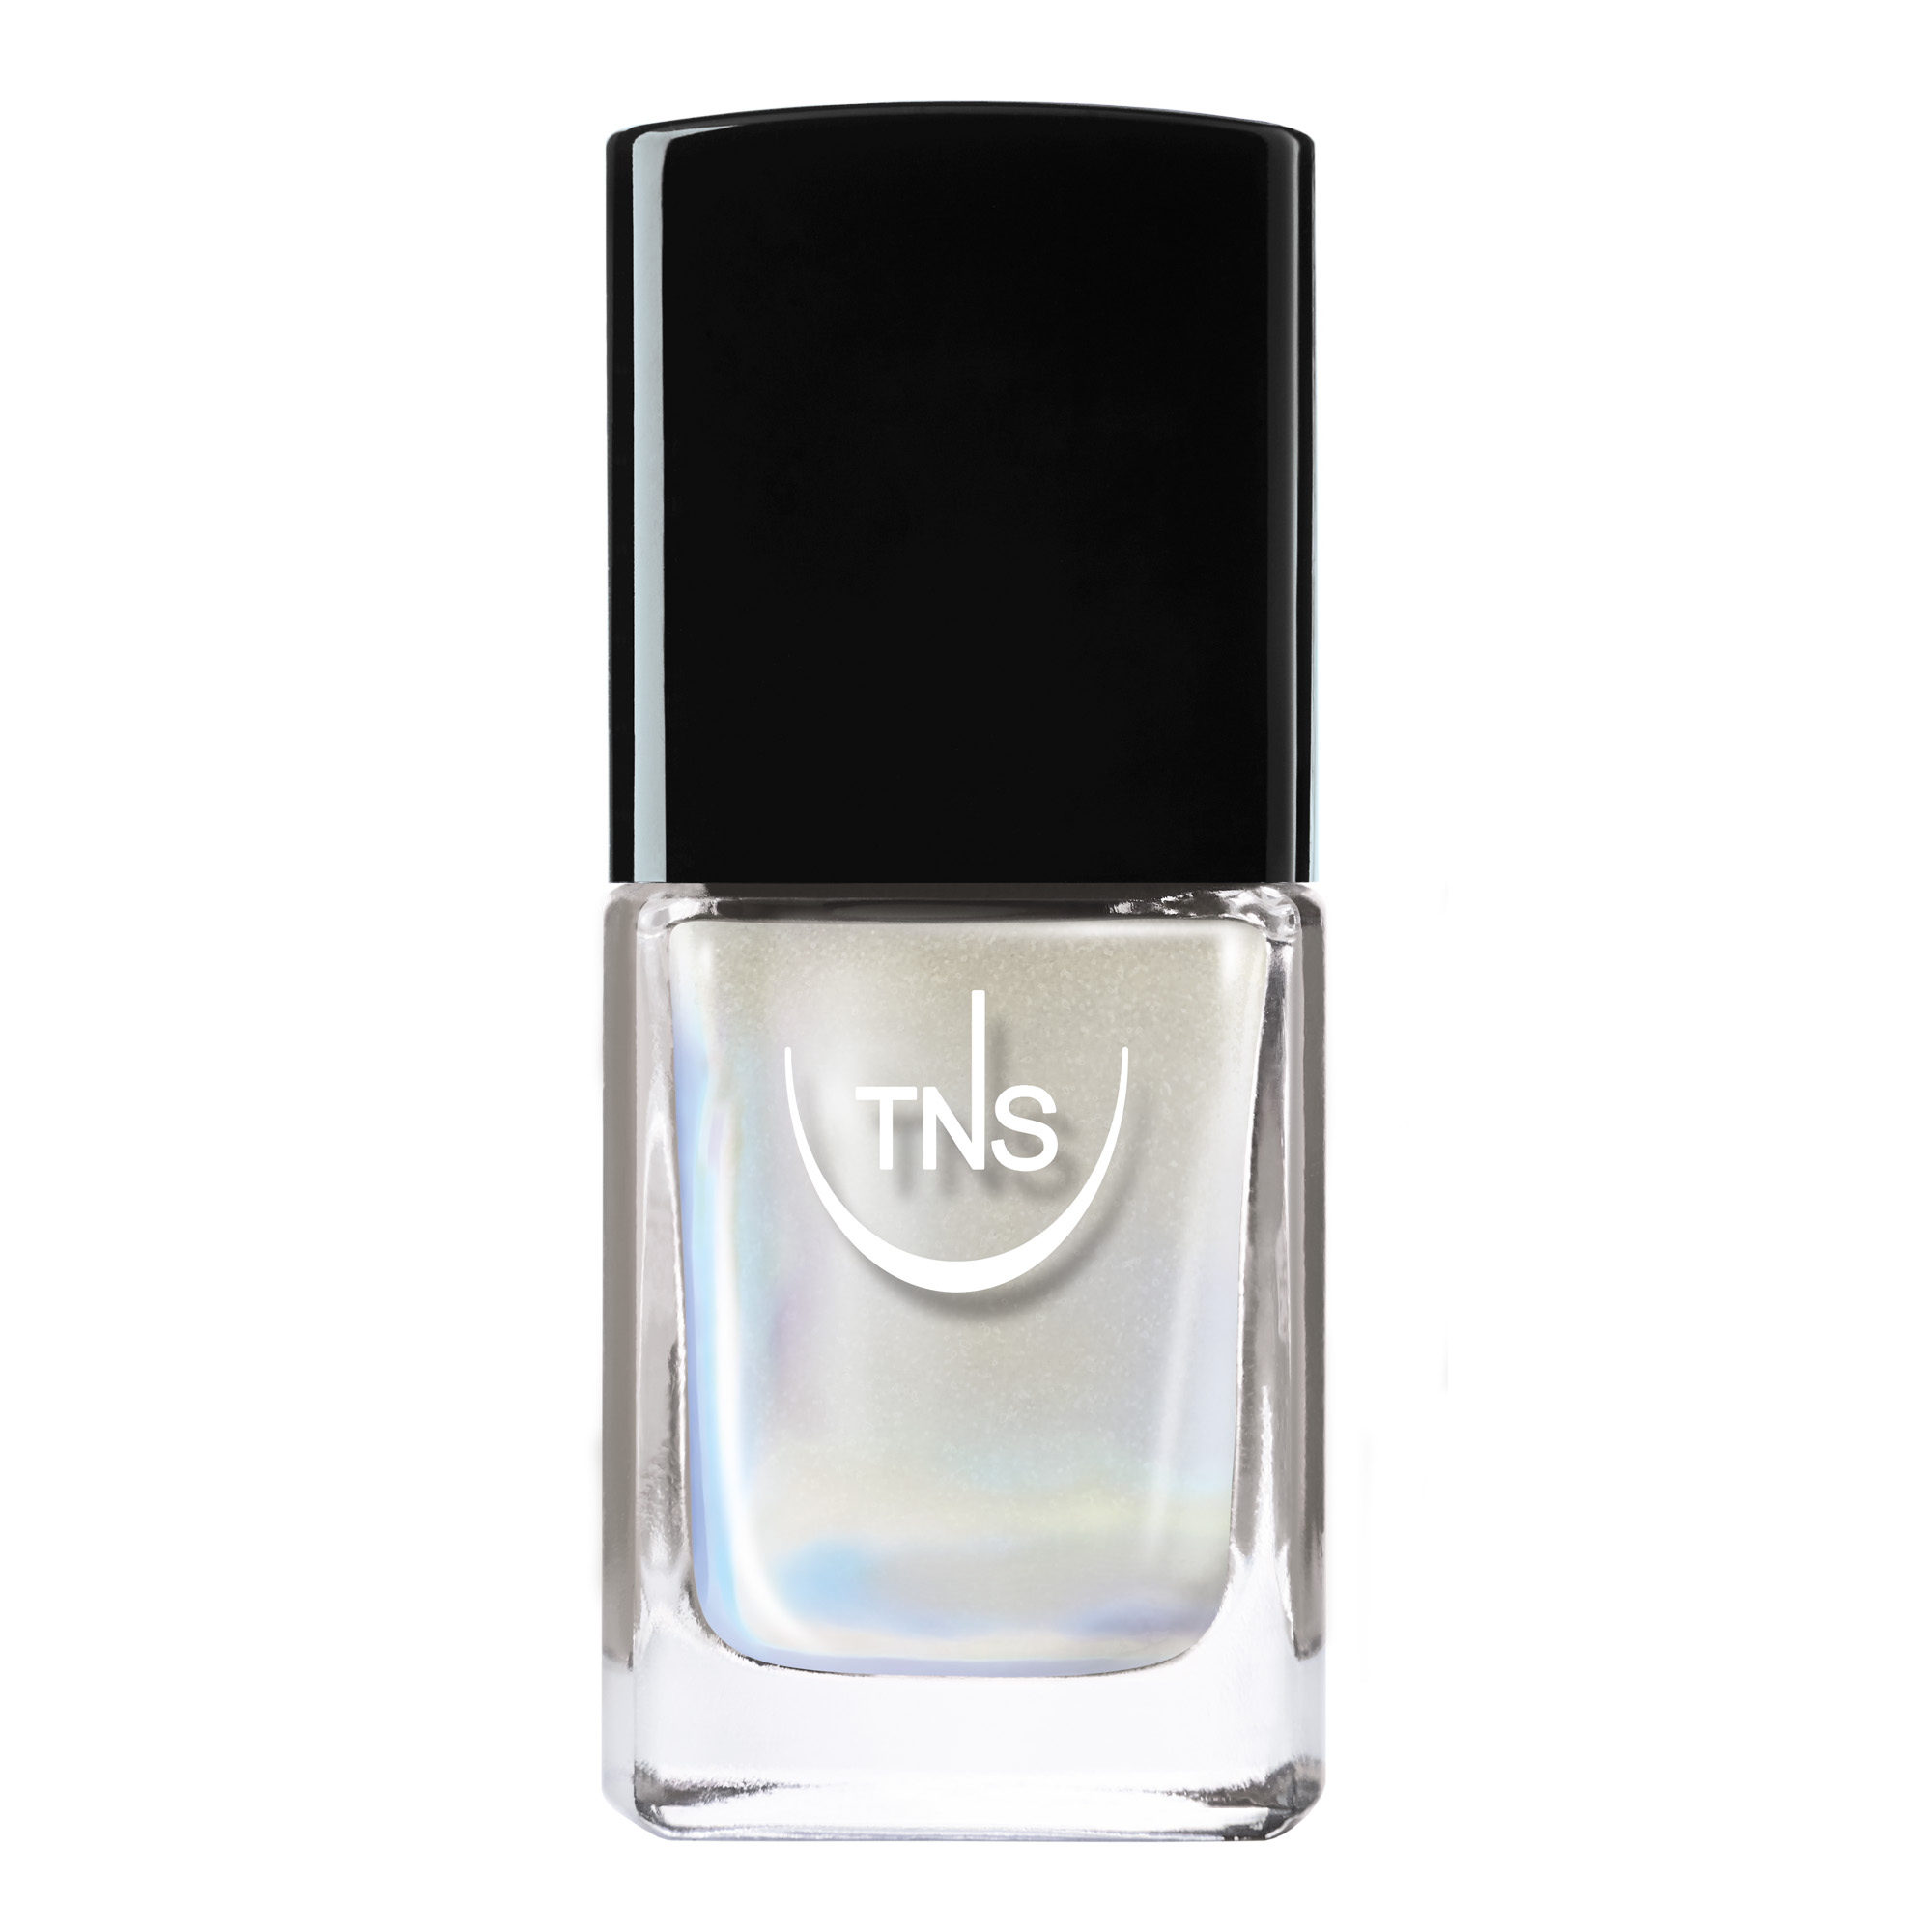 Iridescent Nail Polish Prisma Gloss white 10 ml TNS